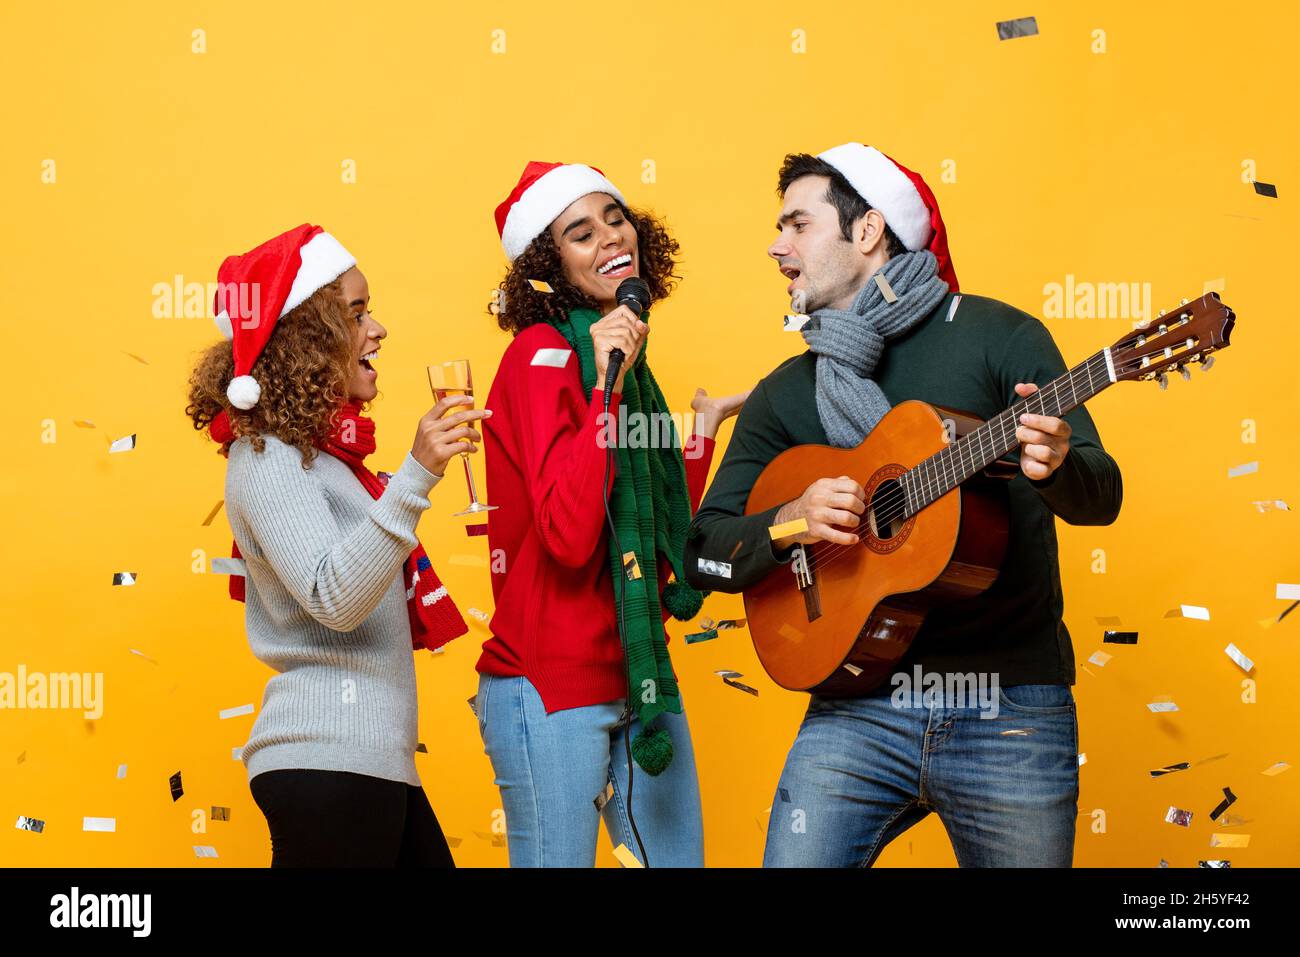 Gruppe von glücklichen verschiedenen engen Freunden mit Party singen und Weihnachten in gelben Studio Hintergrund mit Konfetti feiern Stockfoto